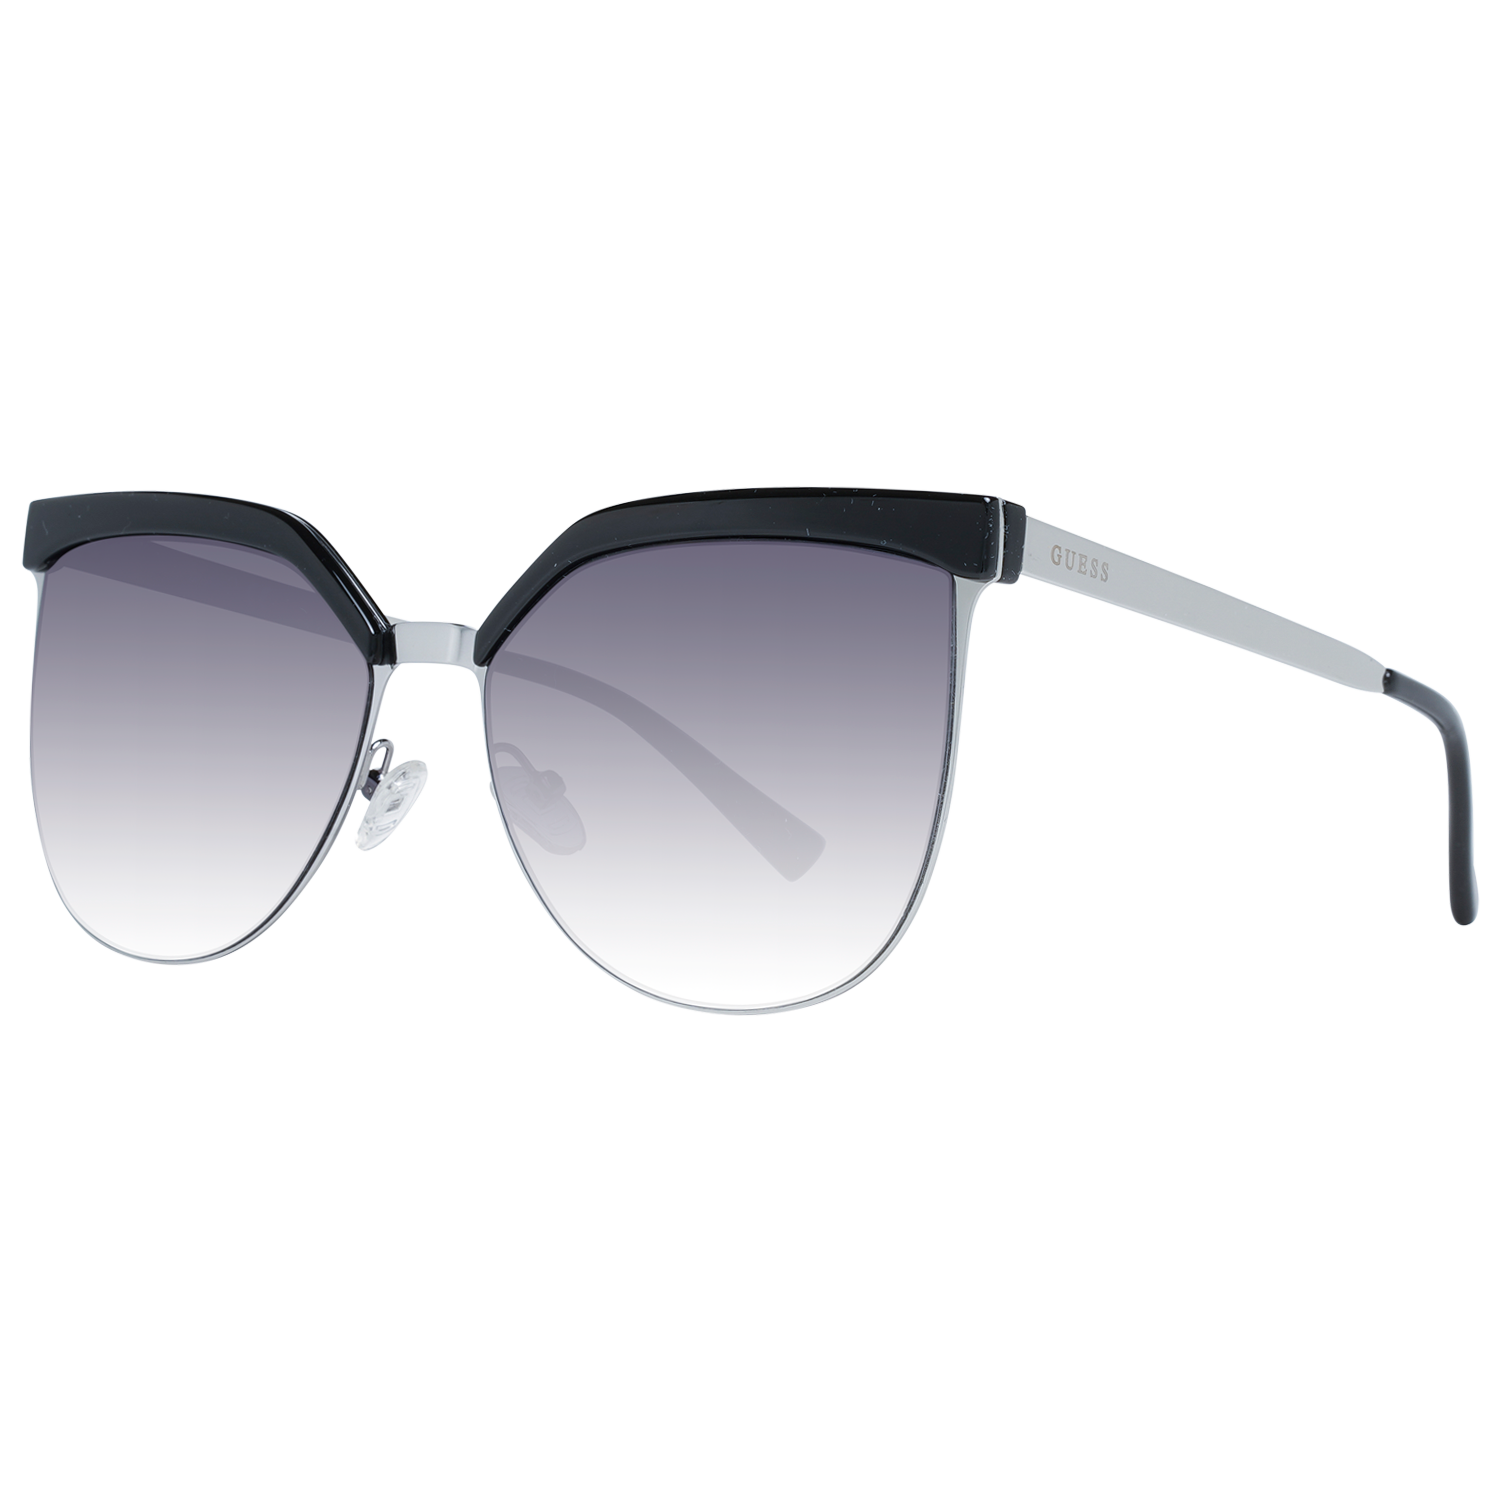 Tom Ford Sunglasses Women's Blue Lens Oval Silver Frame FT0564 14X 64